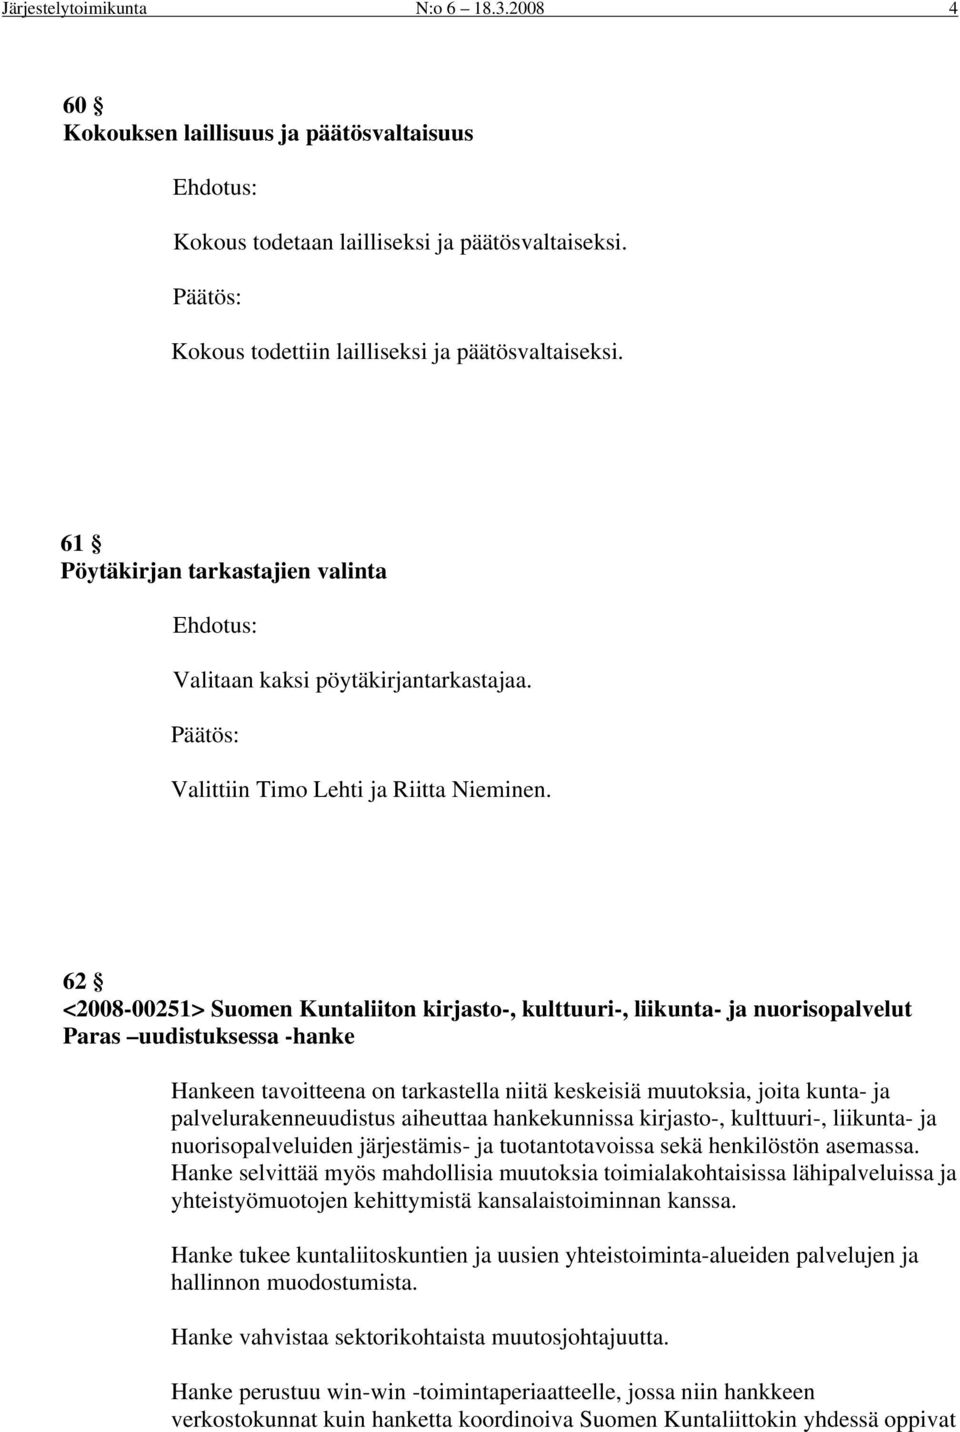 62 <2008-00251> Suomen Kuntaliiton kirjasto-, kulttuuri-, liikunta- ja nuorisopalvelut Paras uudistuksessa -hanke Hankeen tavoitteena on tarkastella niitä keskeisiä muutoksia, joita kunta- ja